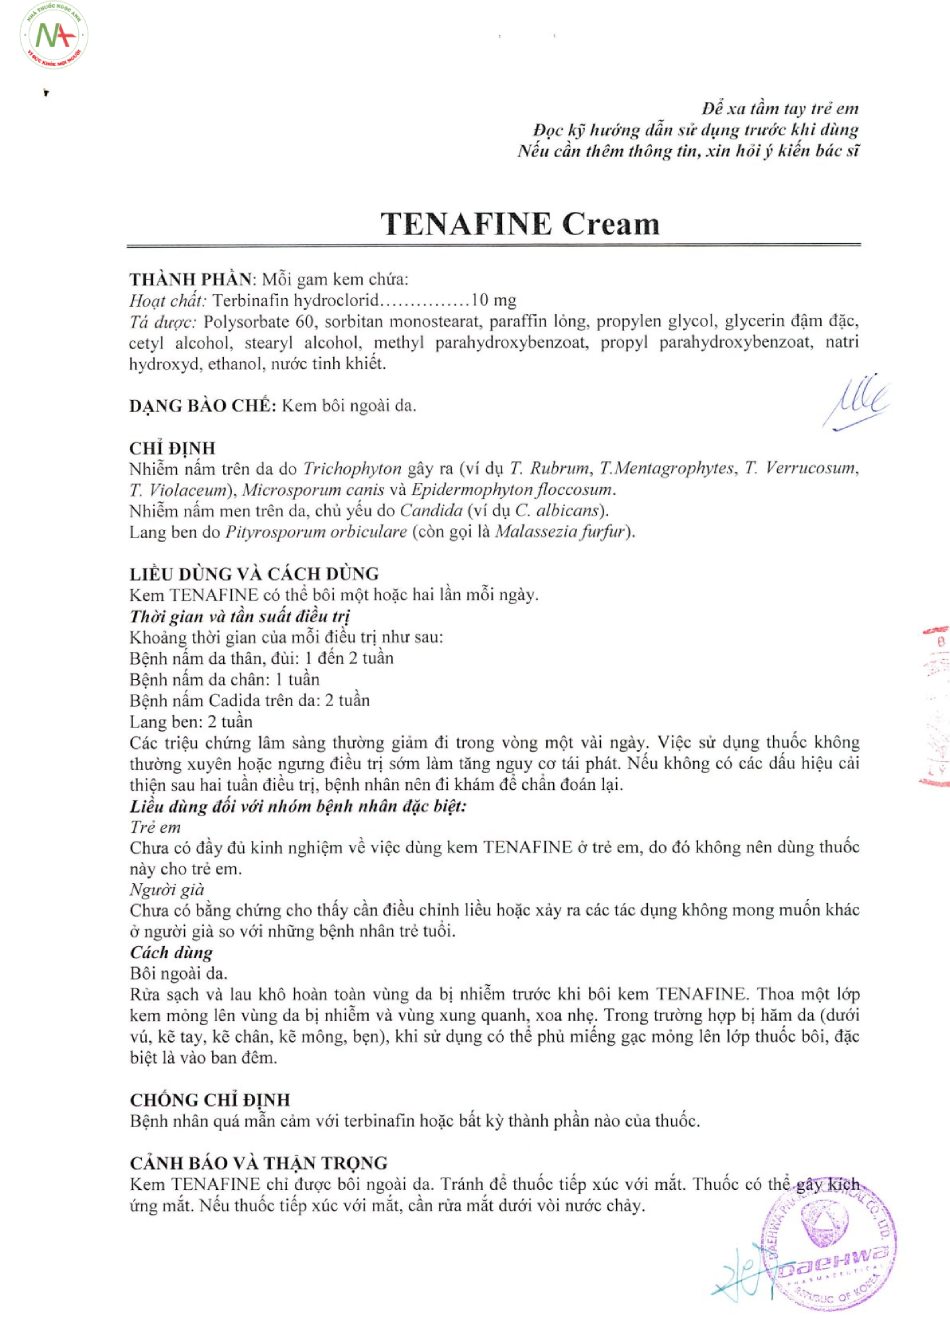 Hướng dẫn sử dụng thuốc Tenafine cream